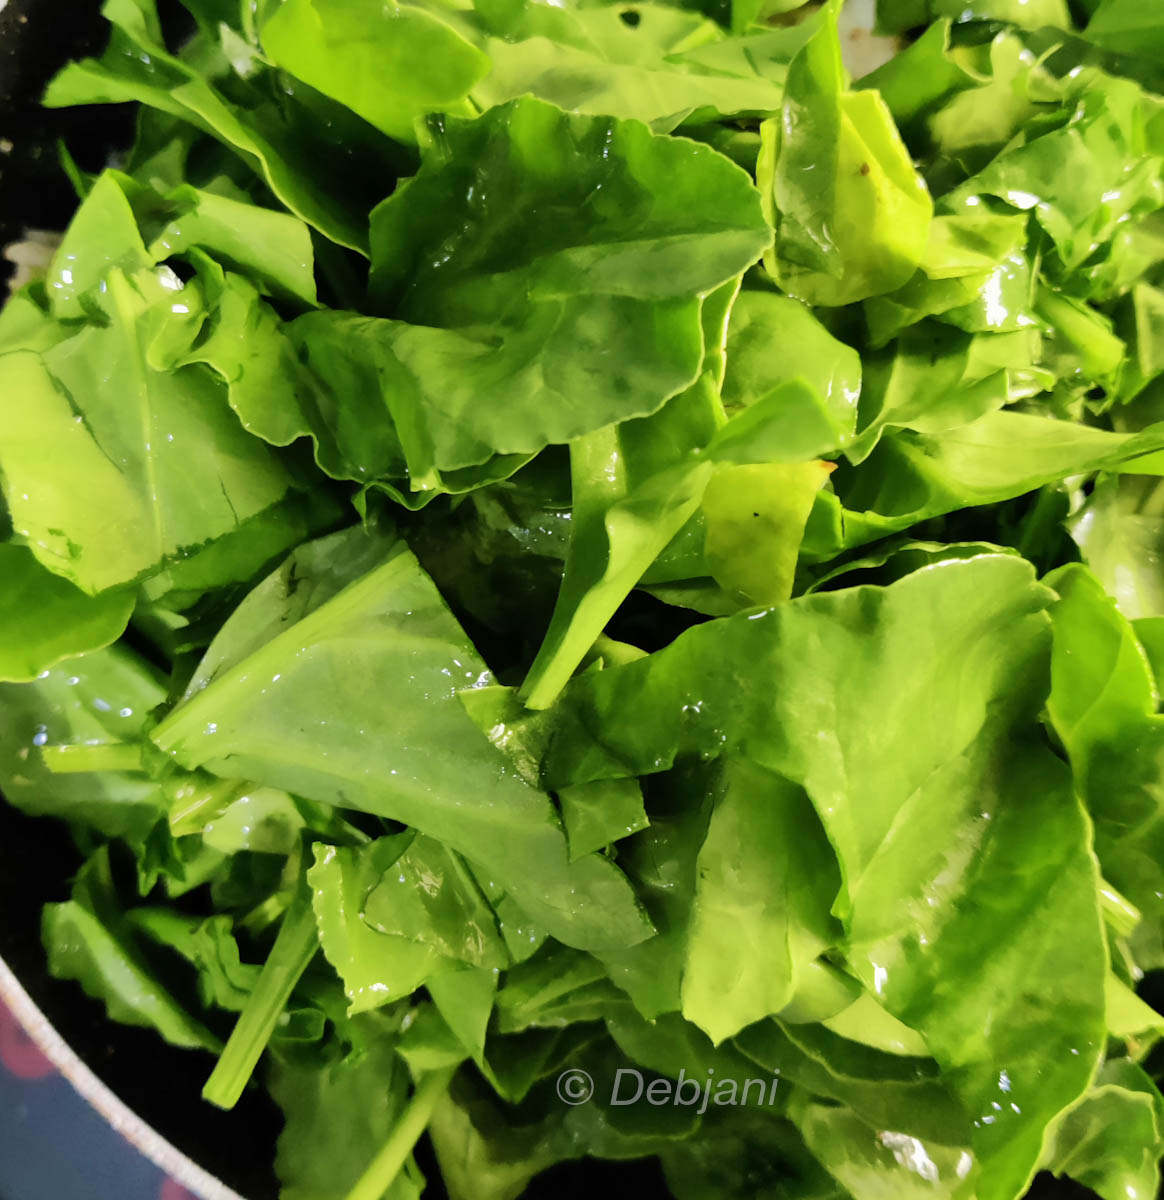 Shrimp and Spinach cream sauce recipe debjanir rannaghar add spinach (9)